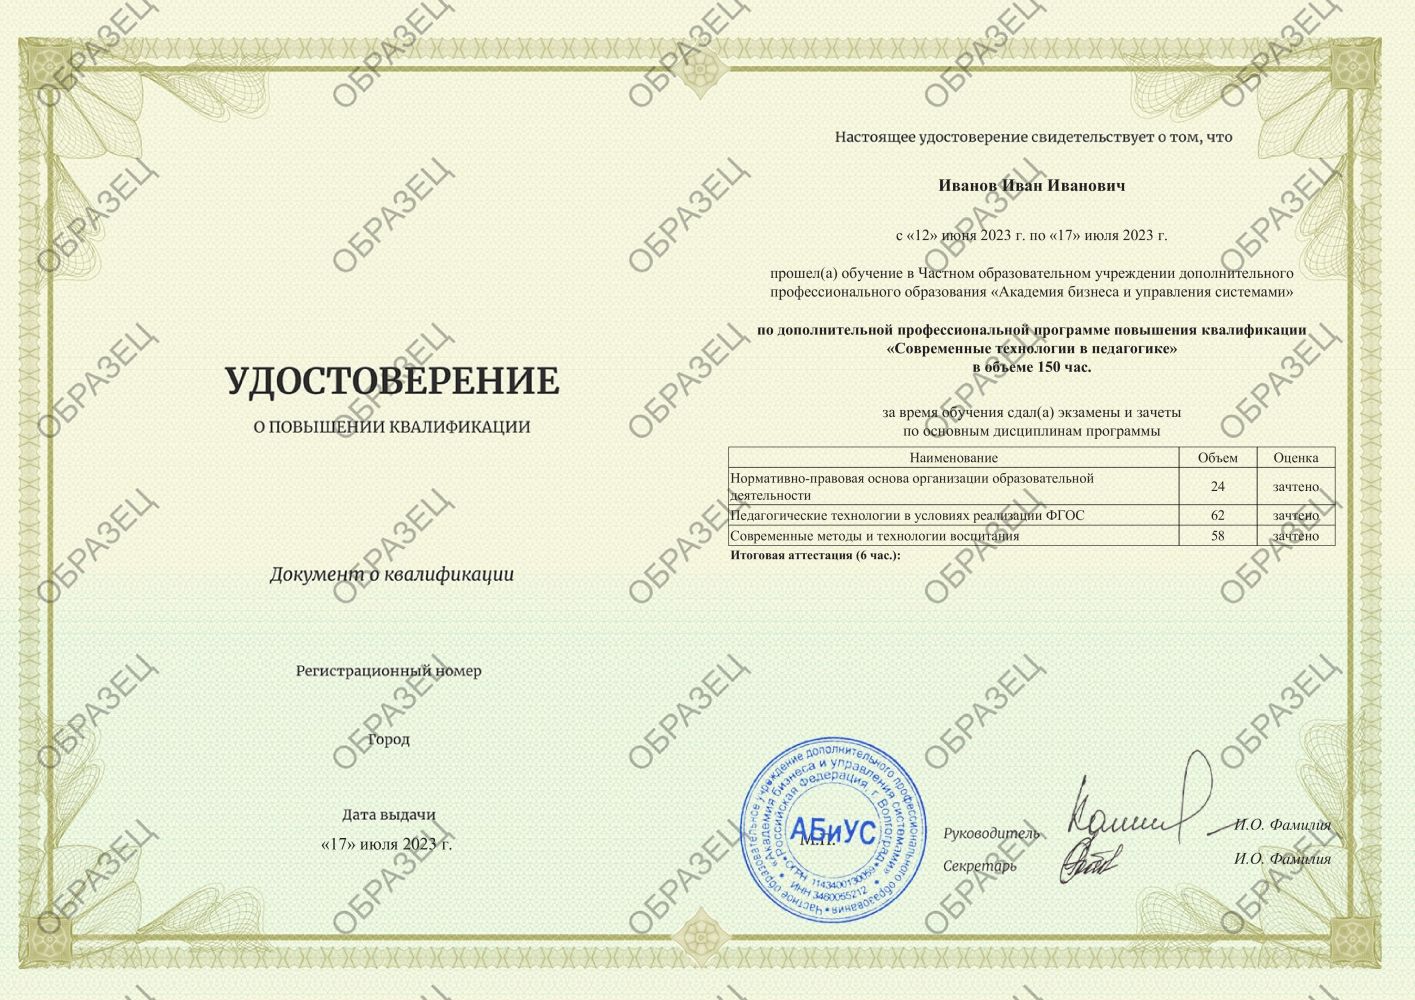 Удостоверение Современные технологии в педагогике 150 часов 5688 руб.